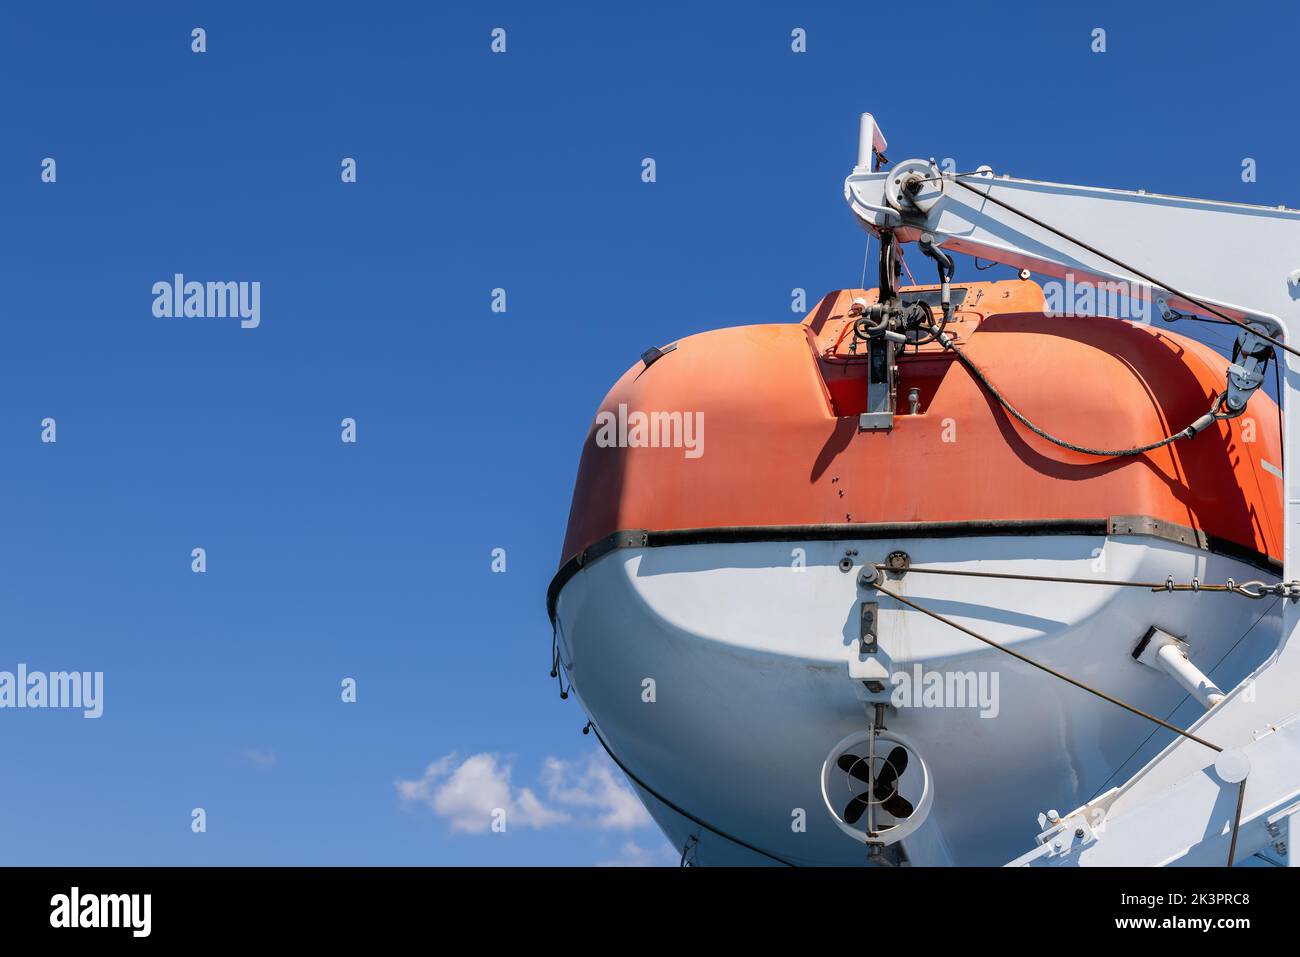 Orangefarbenes Rettungsmotorboot, mit dem jede Passagierfähre ausgestattet ist, Hintergrund mit klarem blauen Sommermorgendhimmel Stockfoto